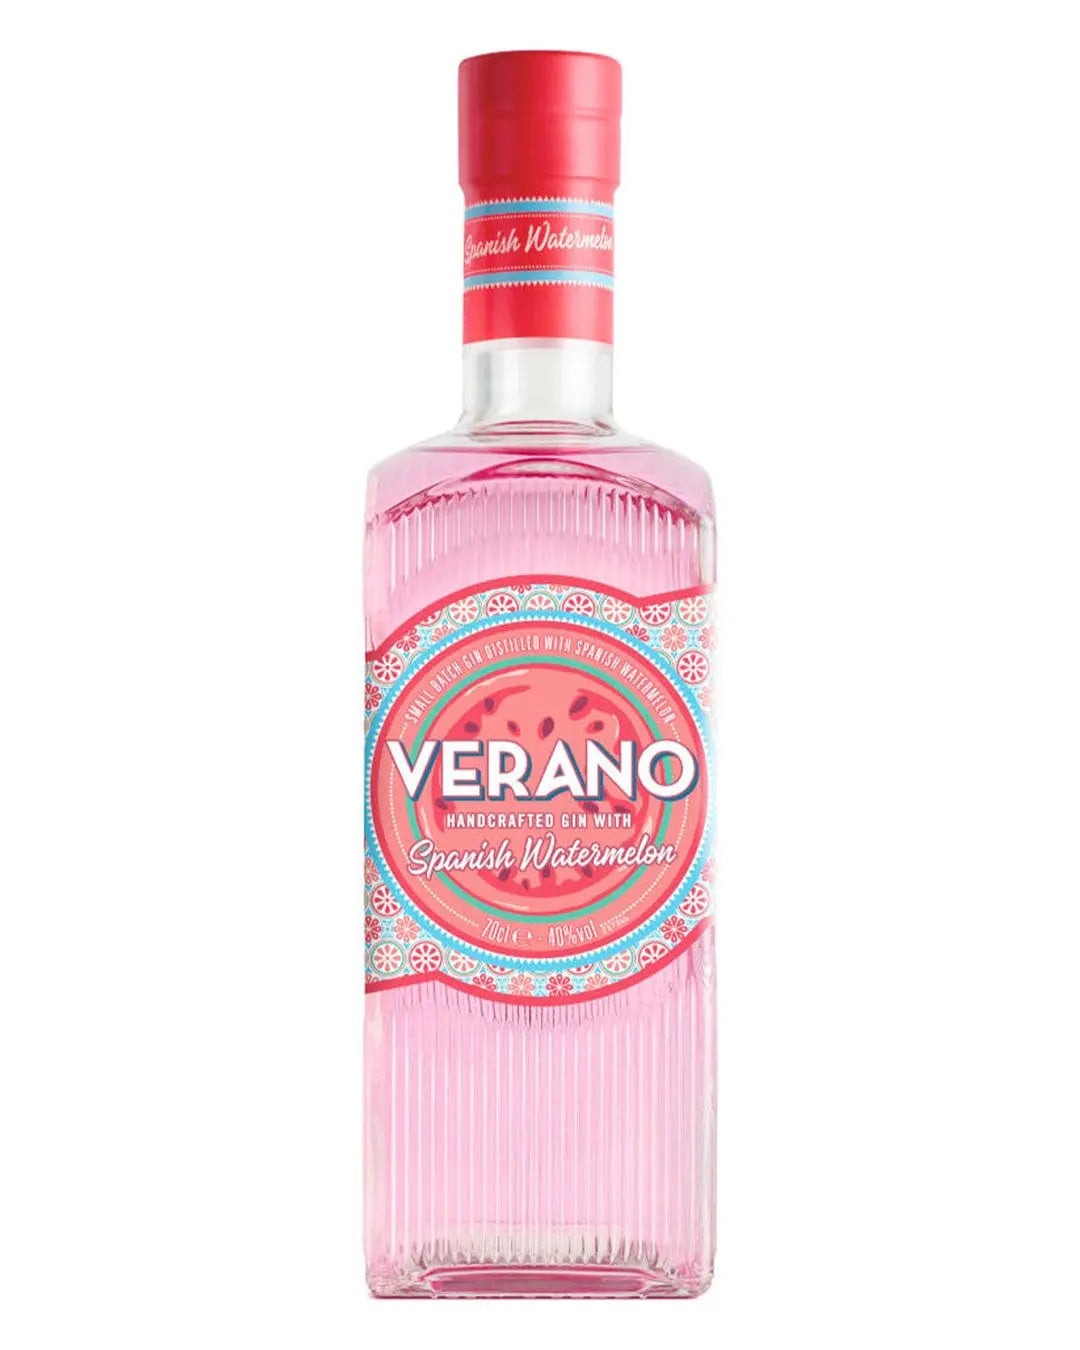 Verano Spanish Watermelon Gin, 70 cl Gin 5010327755083